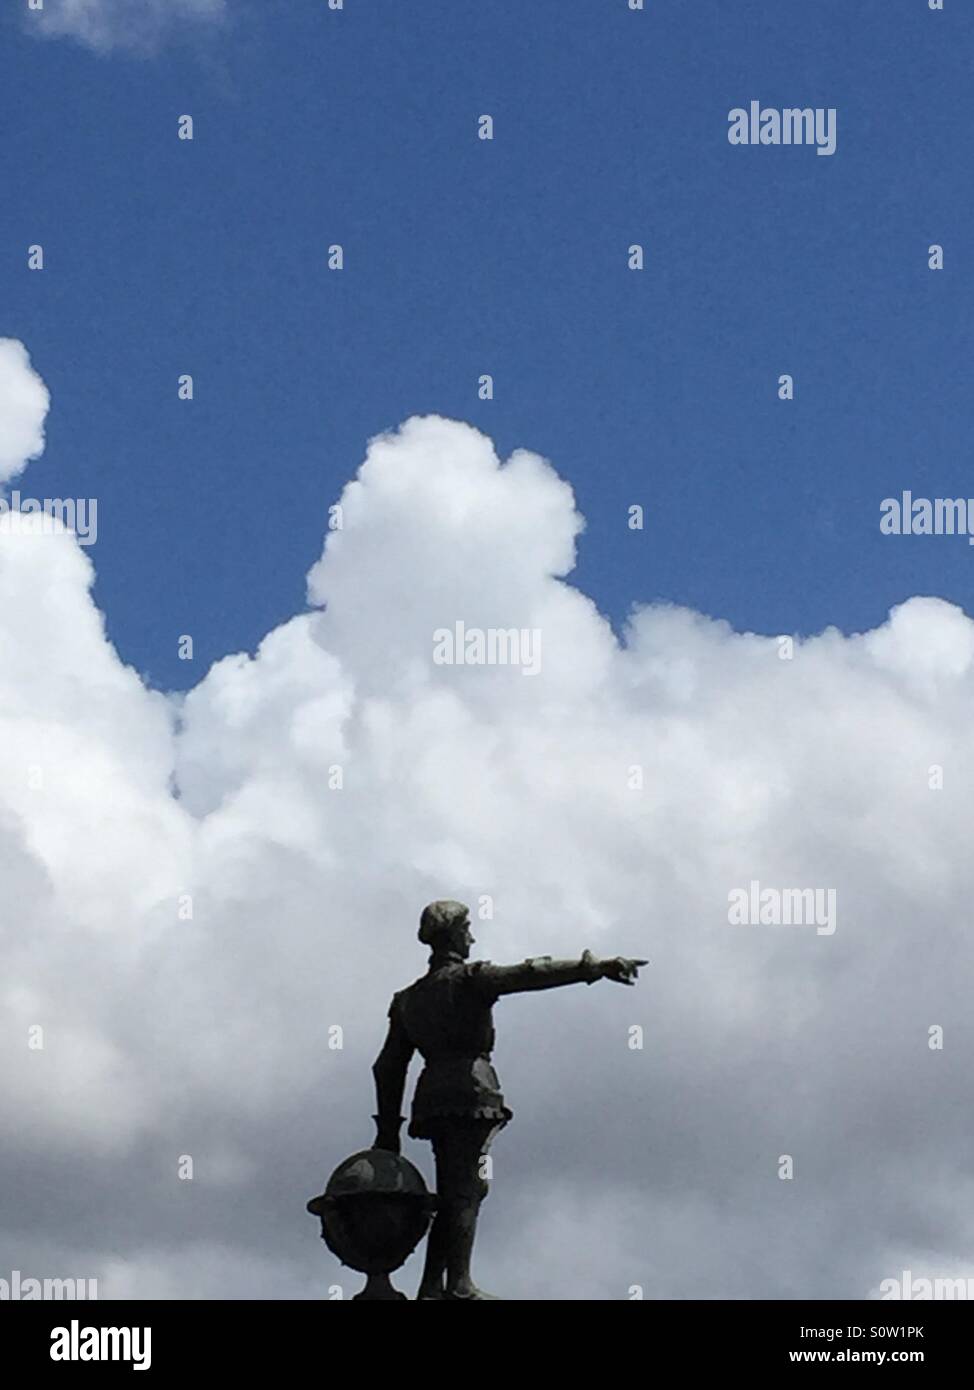 Estátua nas nuvens Stock Photo